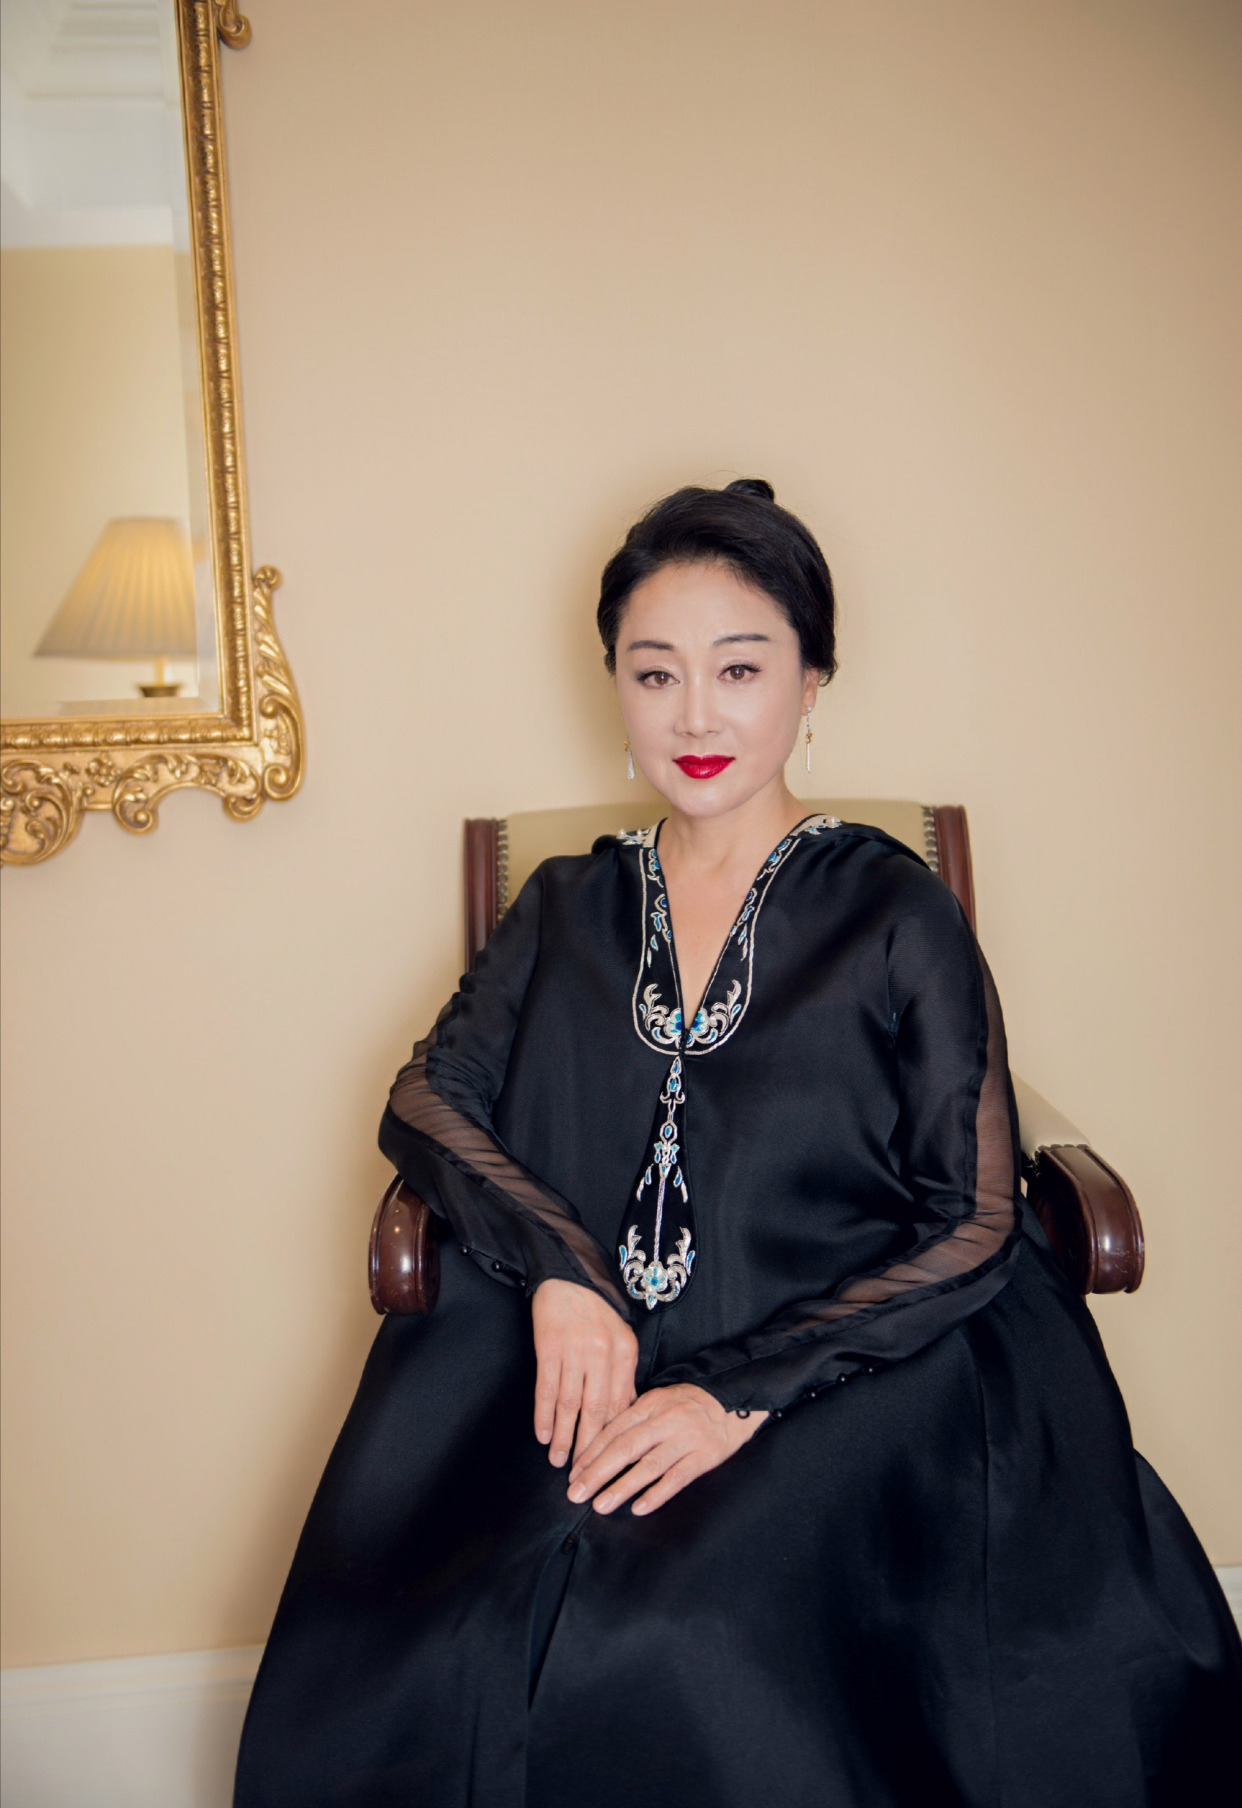 原创57岁王姬真高调,把青花瓷穿在身上,不过这身材确实松弛了